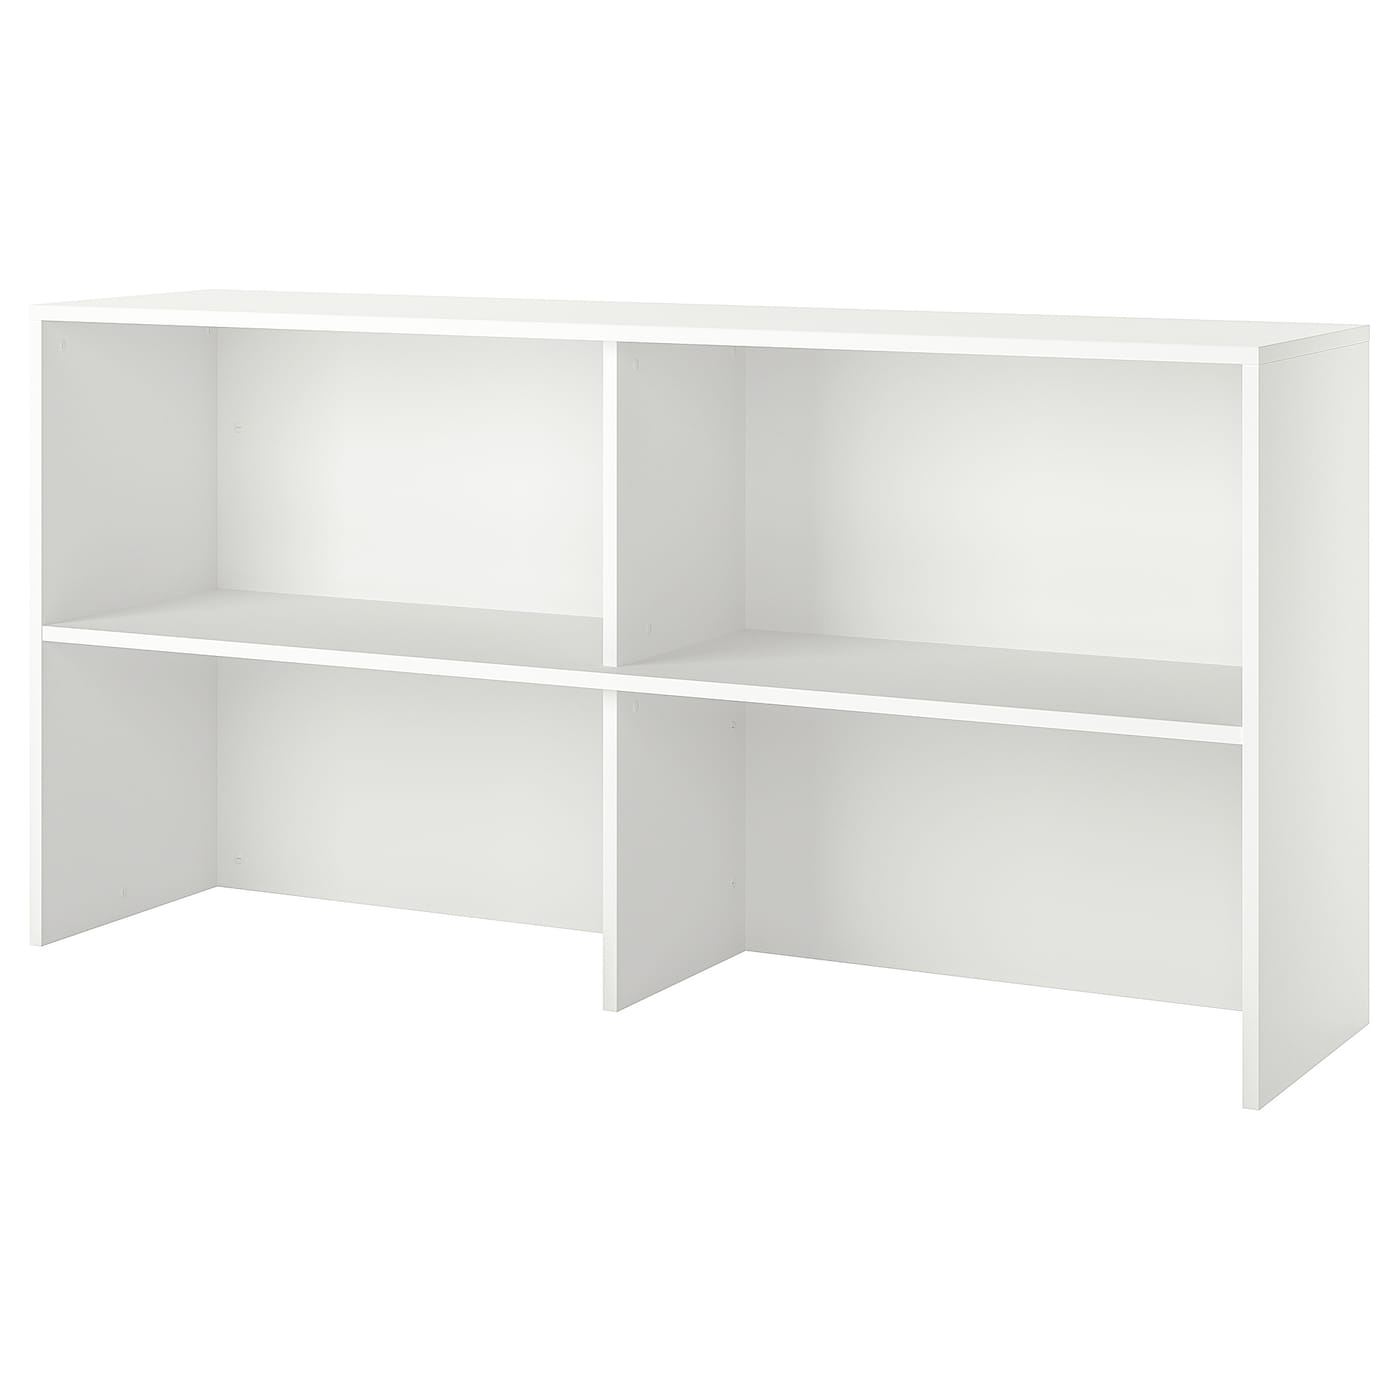 Удлинитель - GALANT IKEA/ ГАЛАНТ ИКЕА, 160х80 см, белый